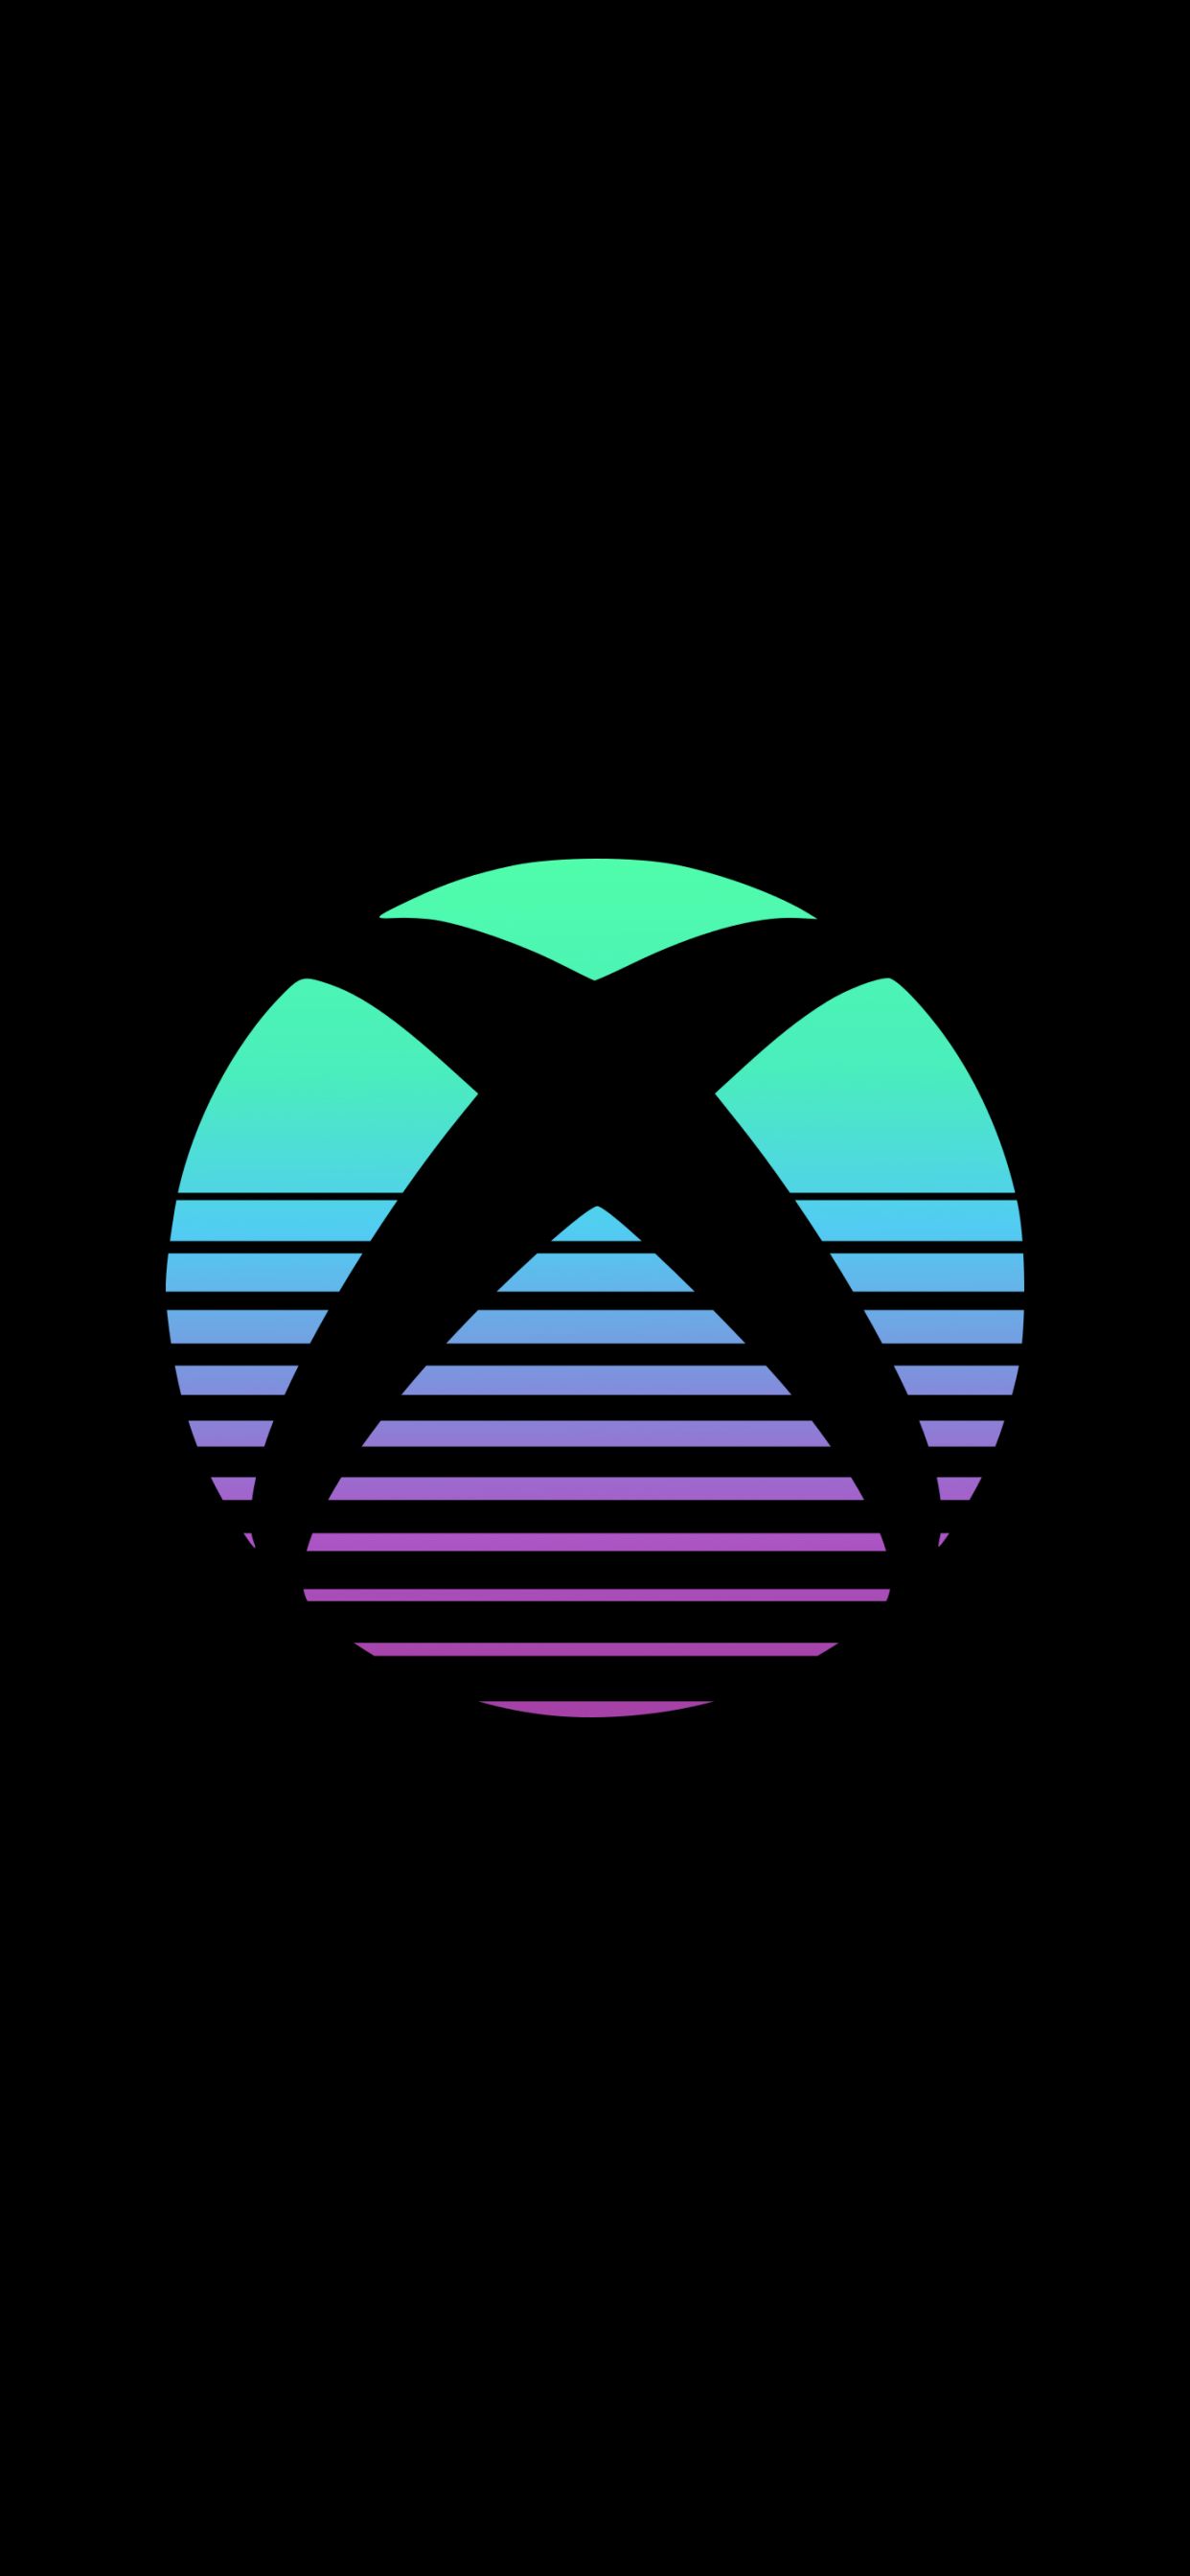 Xbox 4K Wallpaper, Logo, Black background, AMOLED